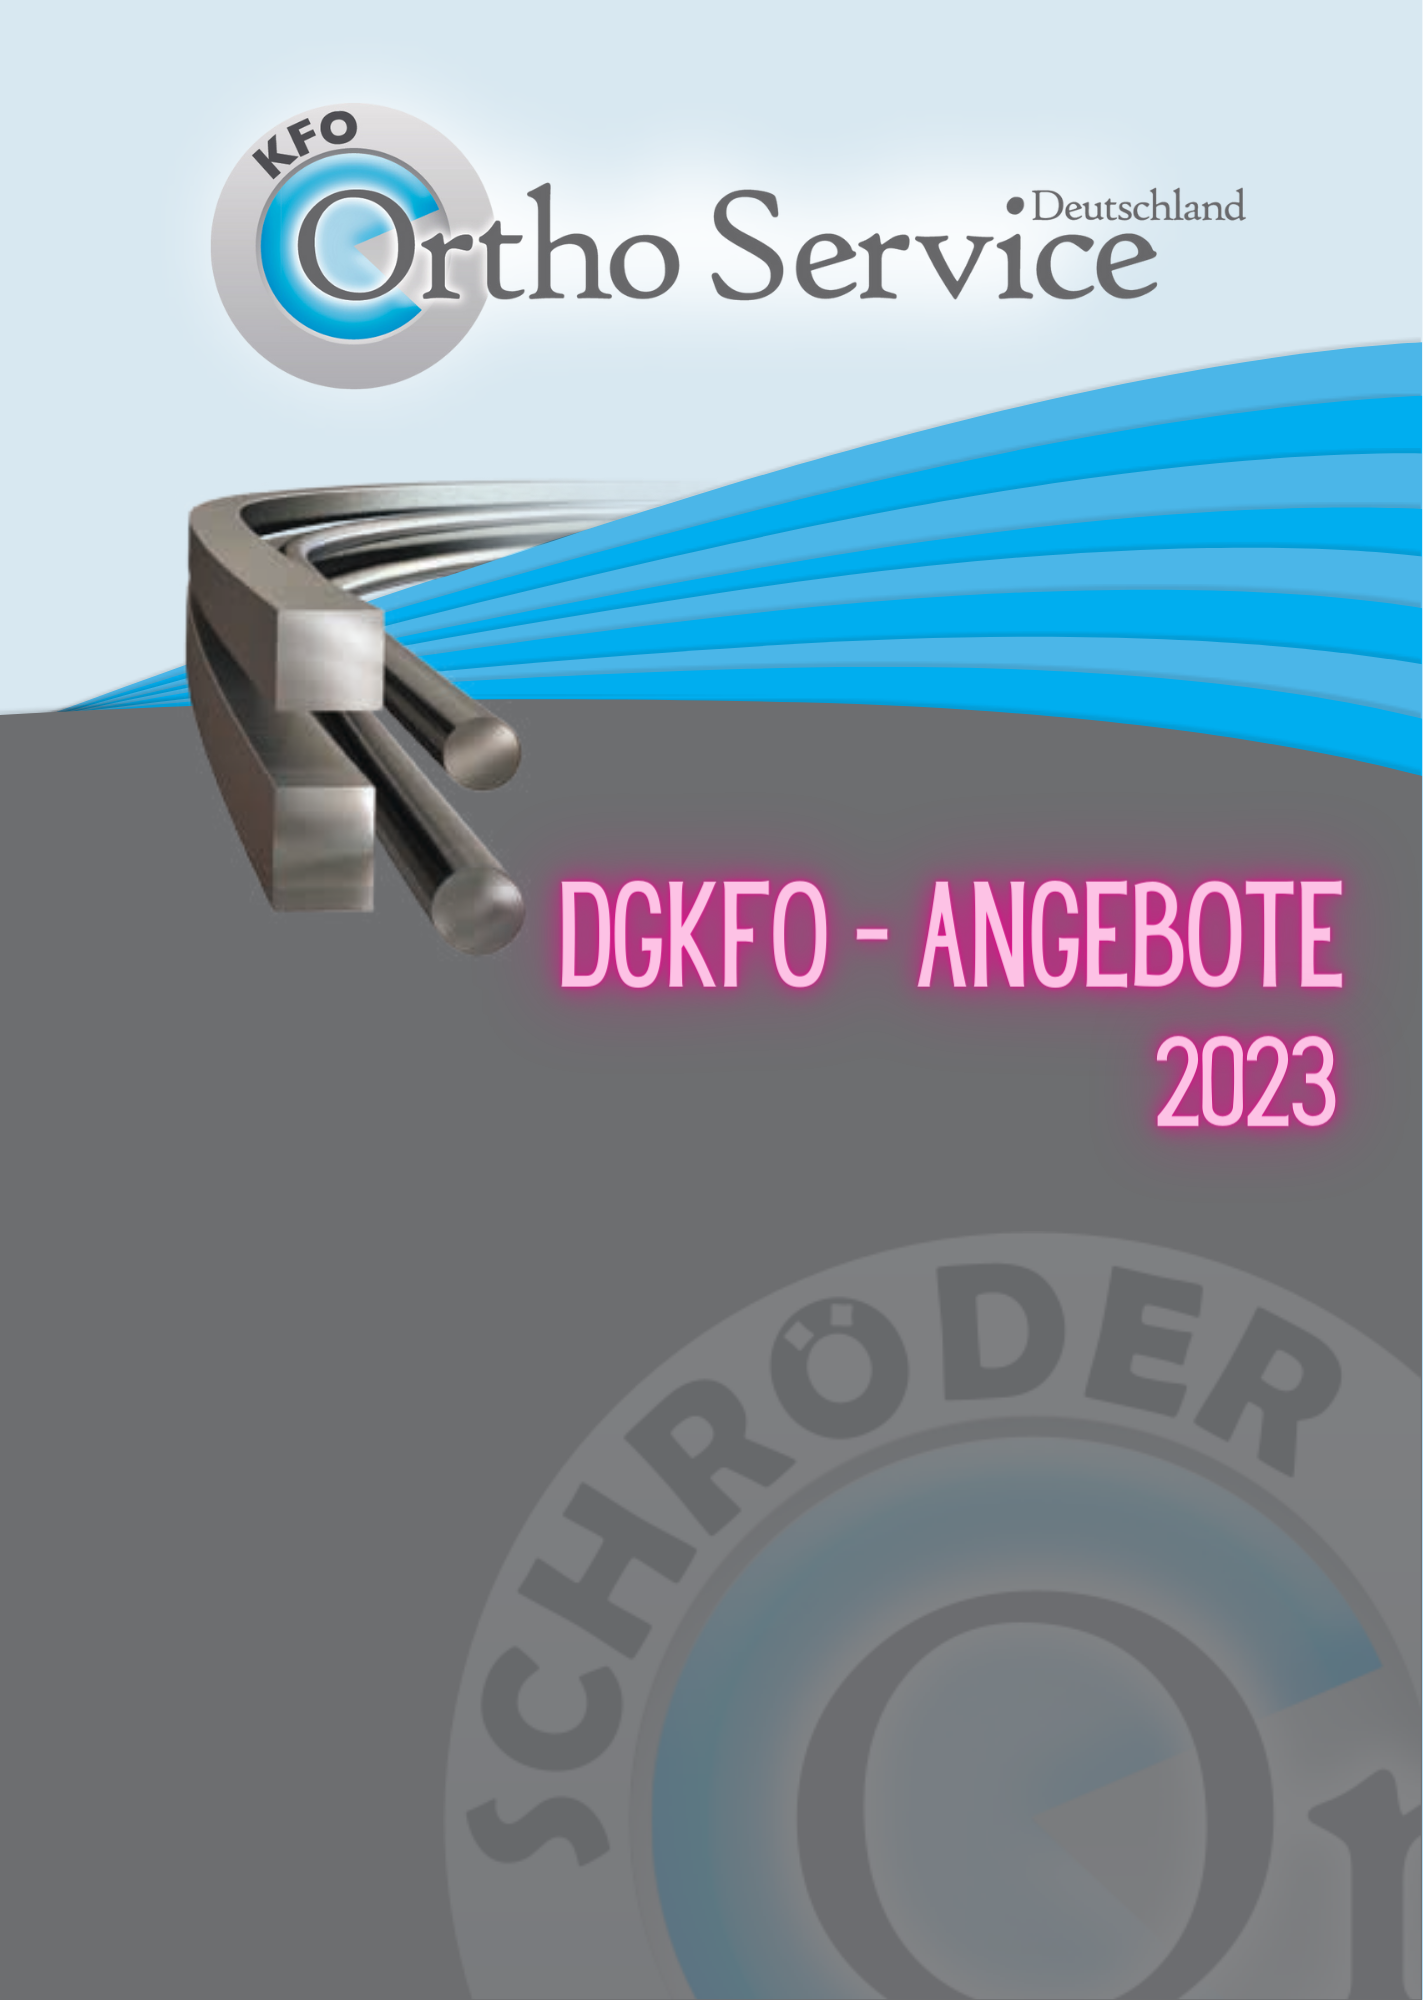 DGFKO Flyer 2023